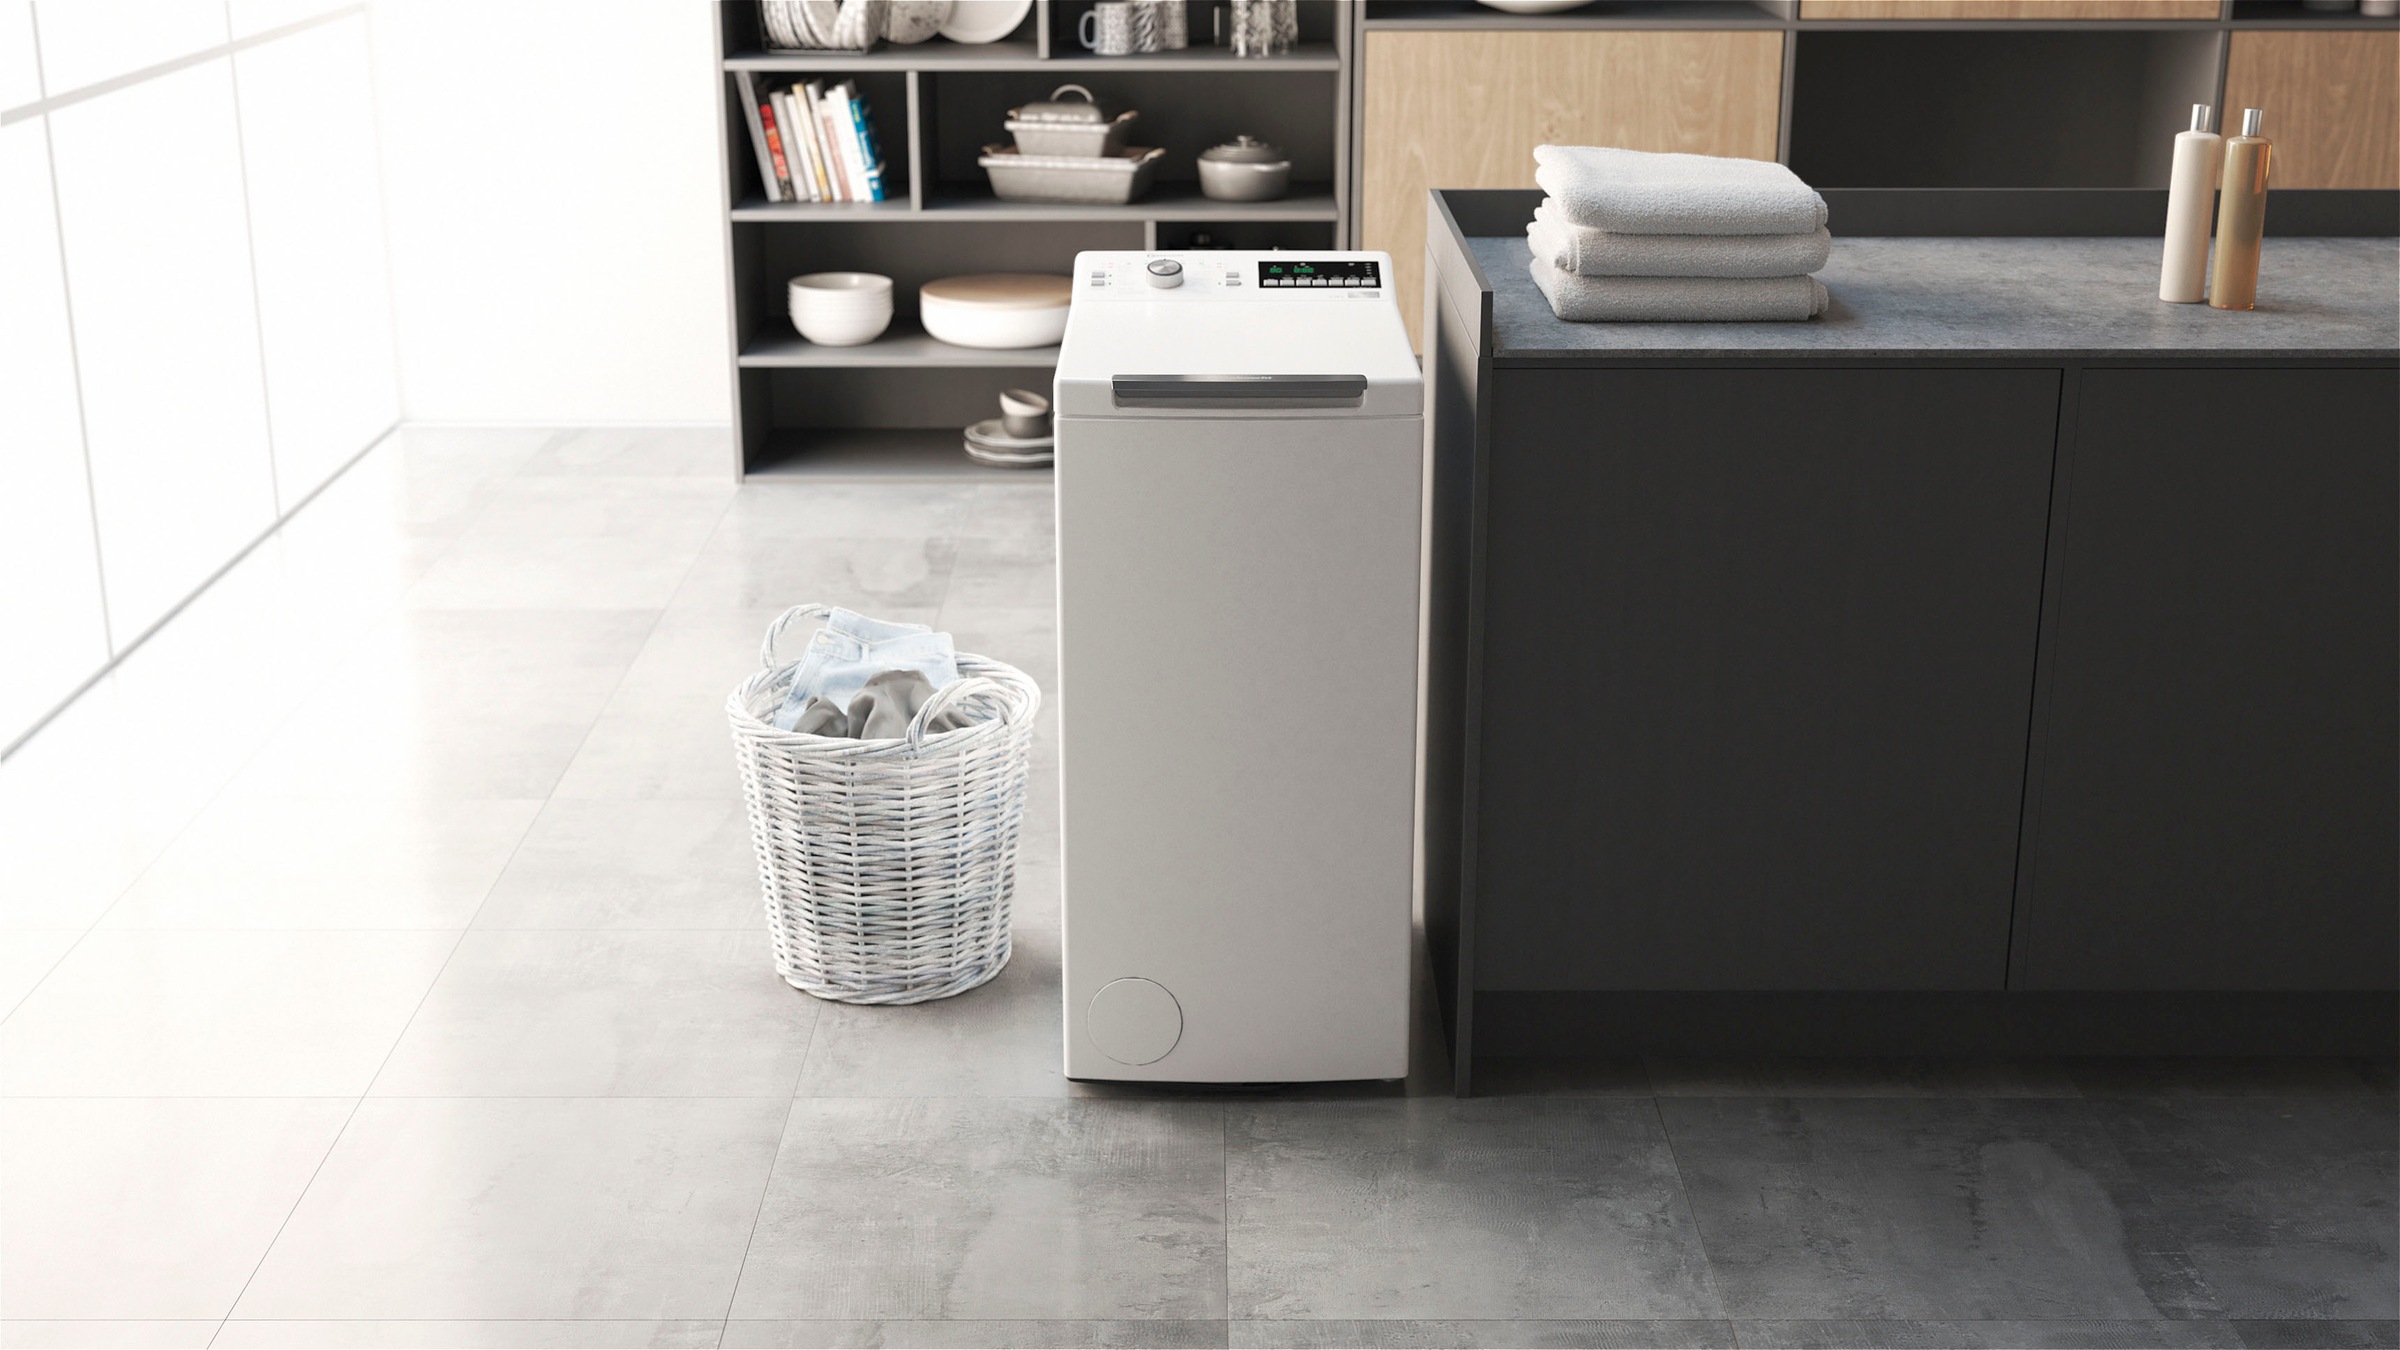 BAUKNECHT Waschmaschine Toplader »WMT Eco Smart 6513 Z C«, WMT Eco Smart 6513 Z C, 6,5 kg, 1200 U/min